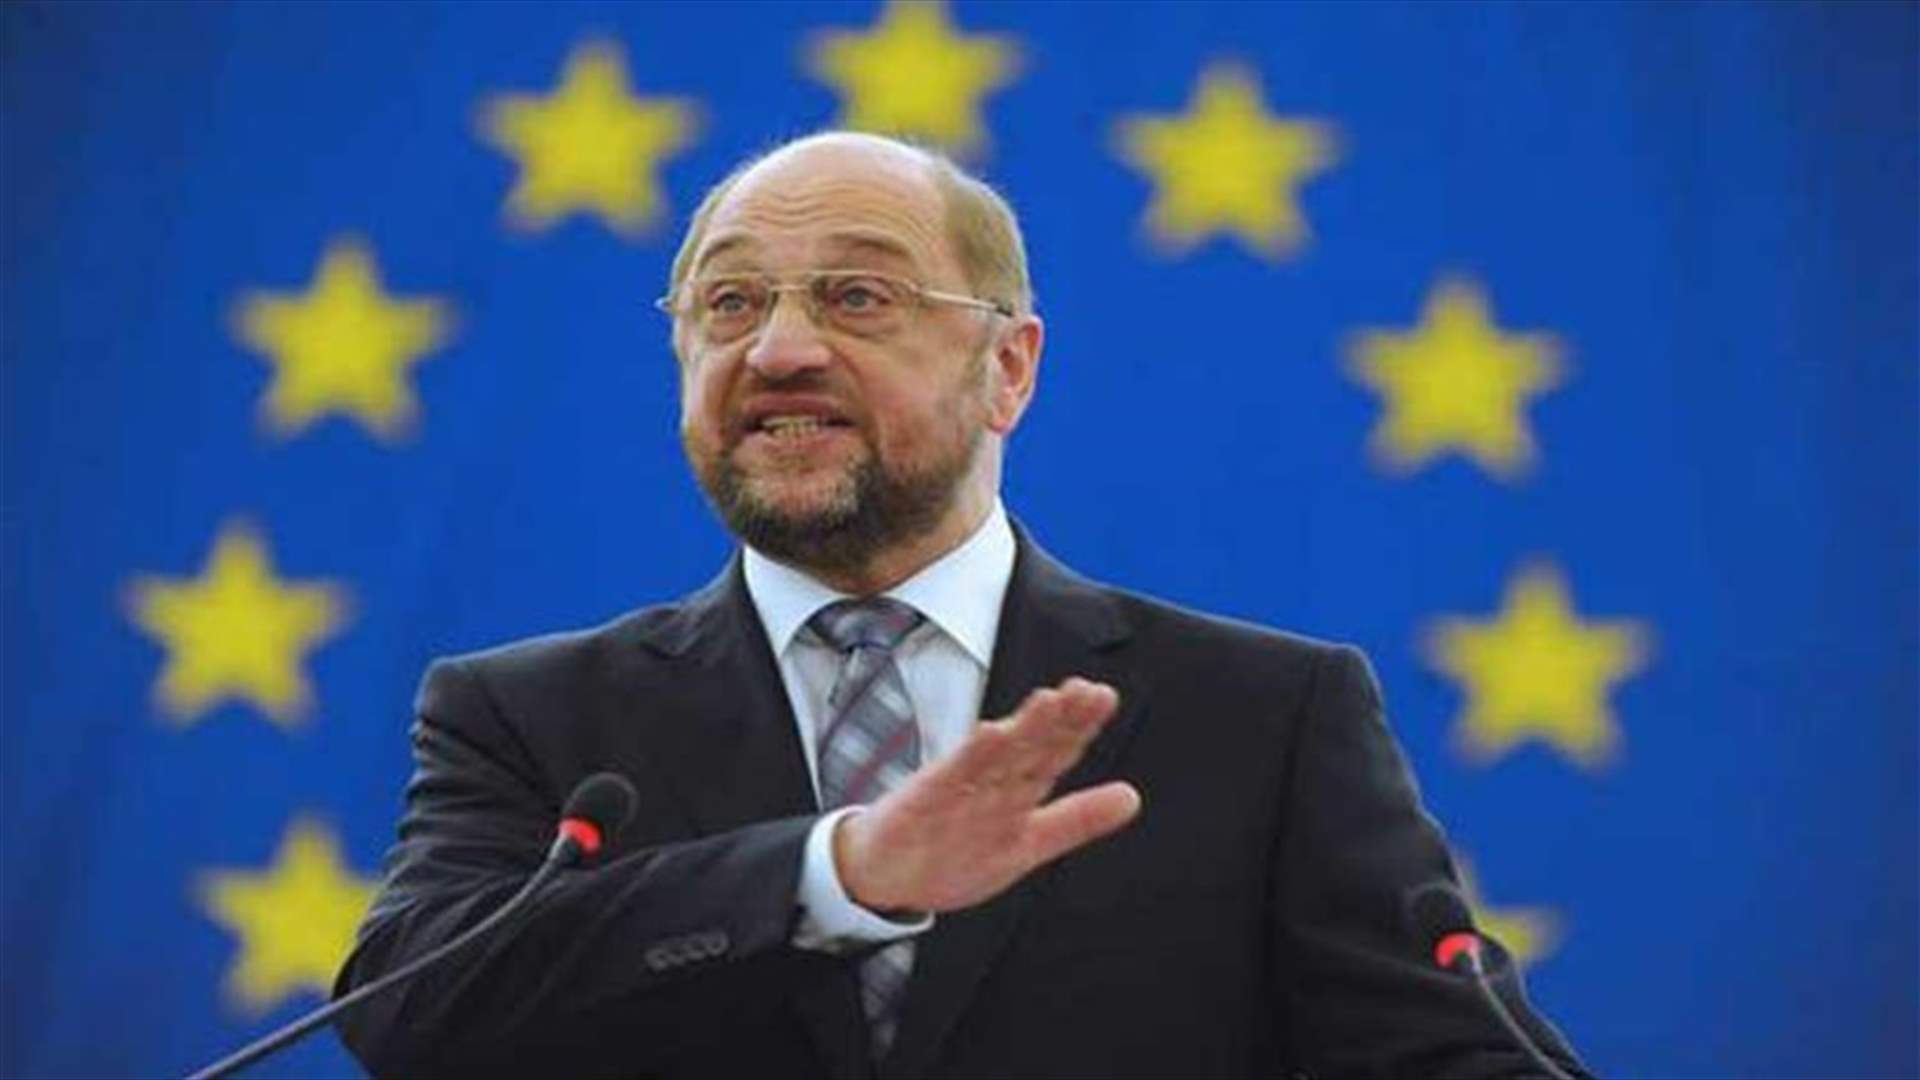 زعيم الحزب الديمقراطي الاشتراكي الألماني: على الاتحاد الأوروبي أن يصبح أقوى